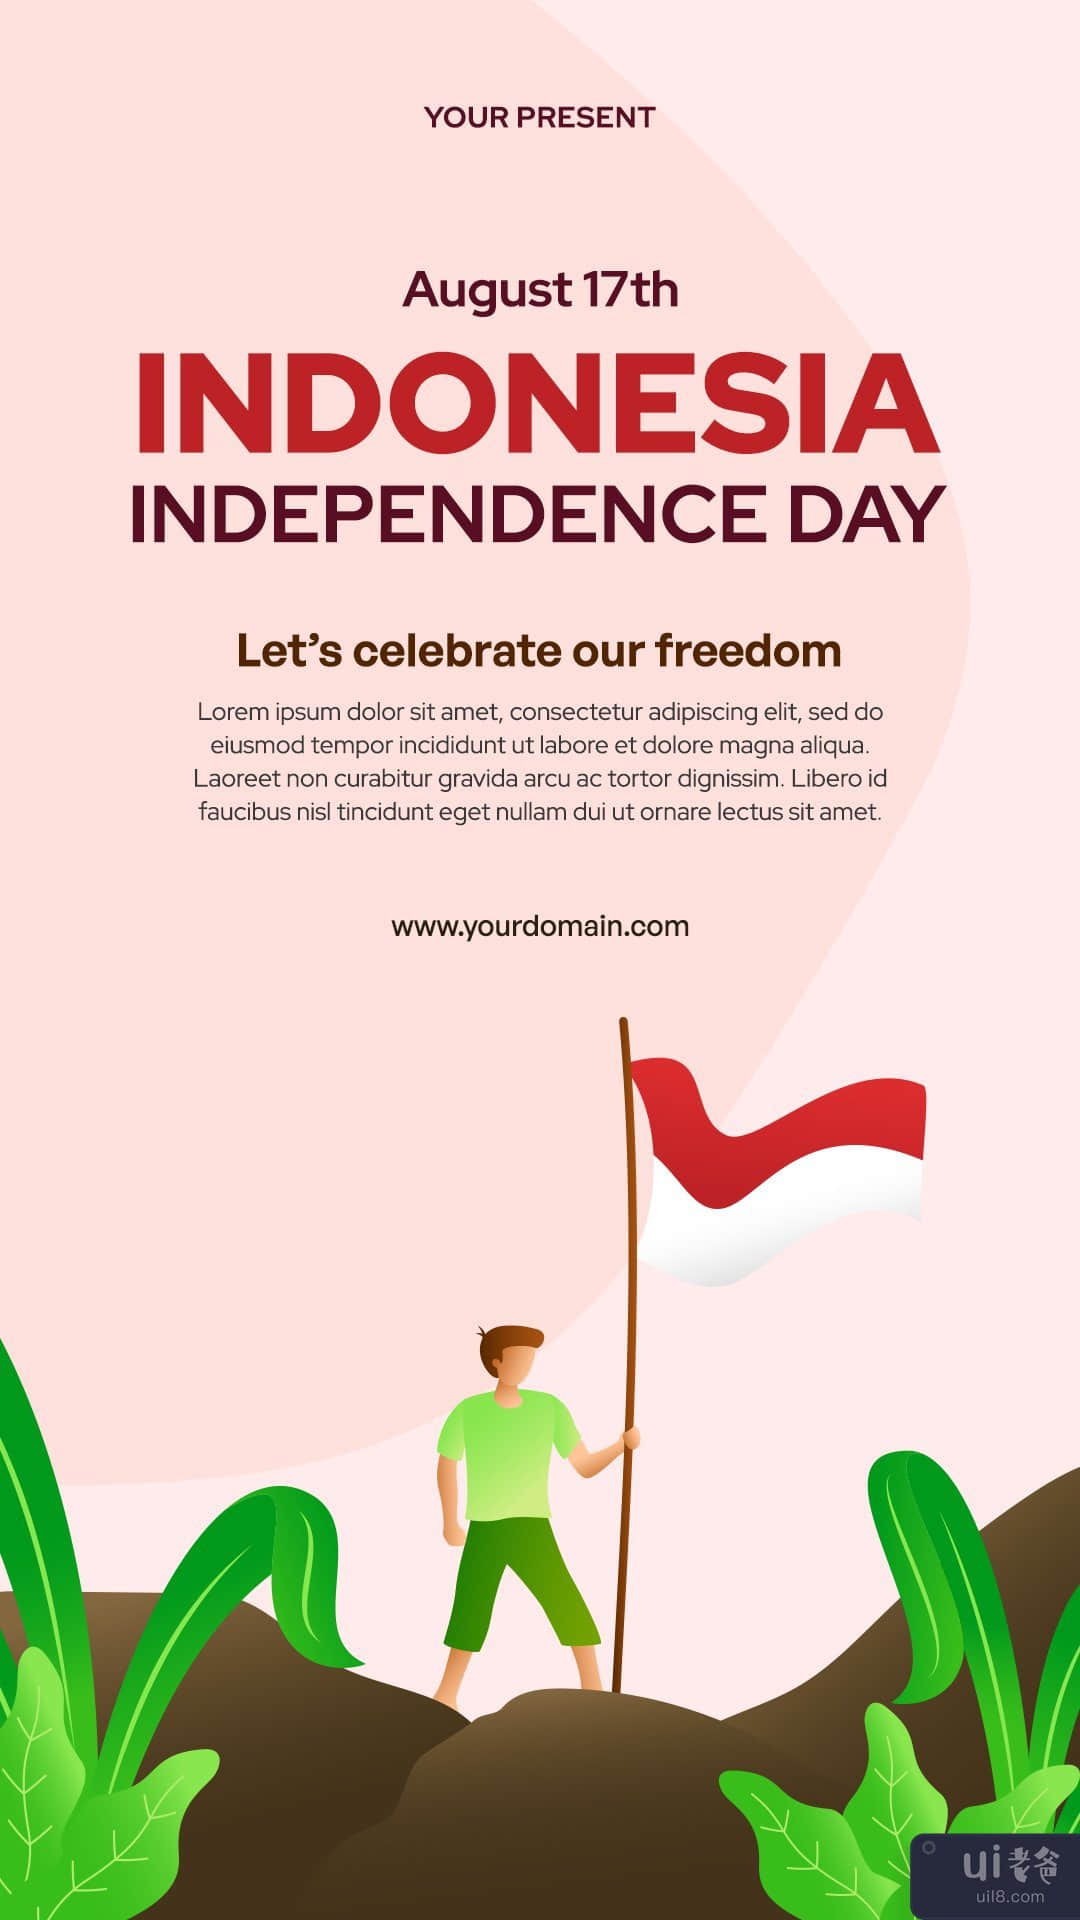 印度尼西亚独立日 Instagram 故事(Indonesian Independence Day Instagram Stories)插图9